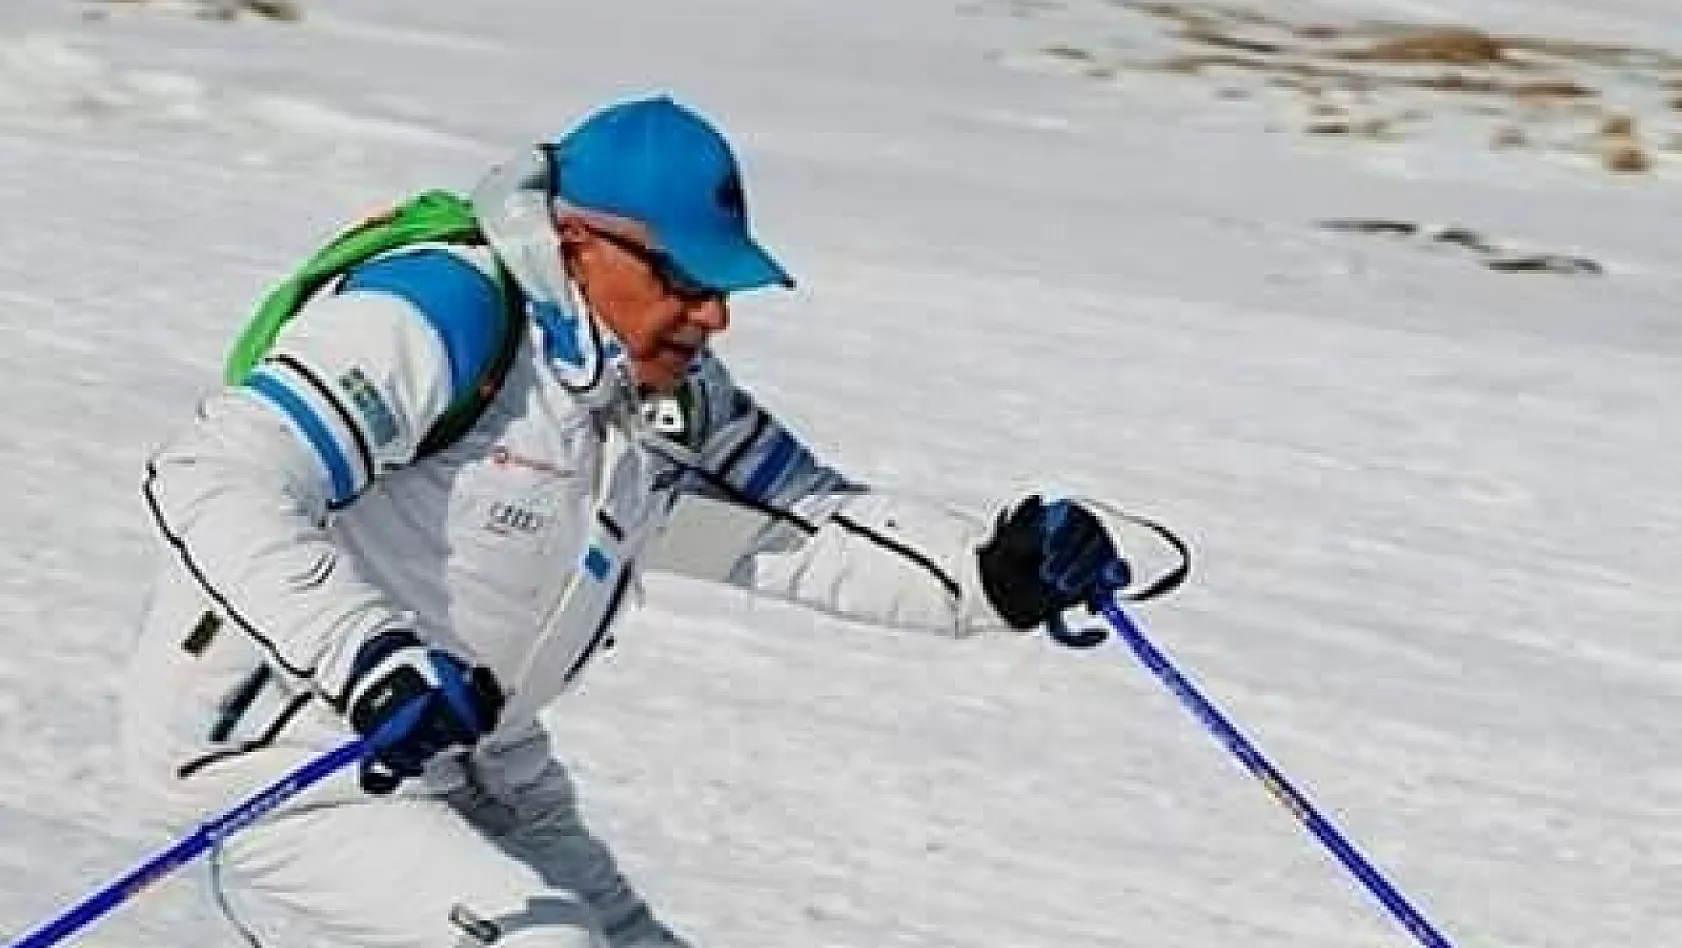 Kayak eğitmeni Veysel Değirmenci: 'Sağlıklı yaşamak isteyen dağa gelsin'